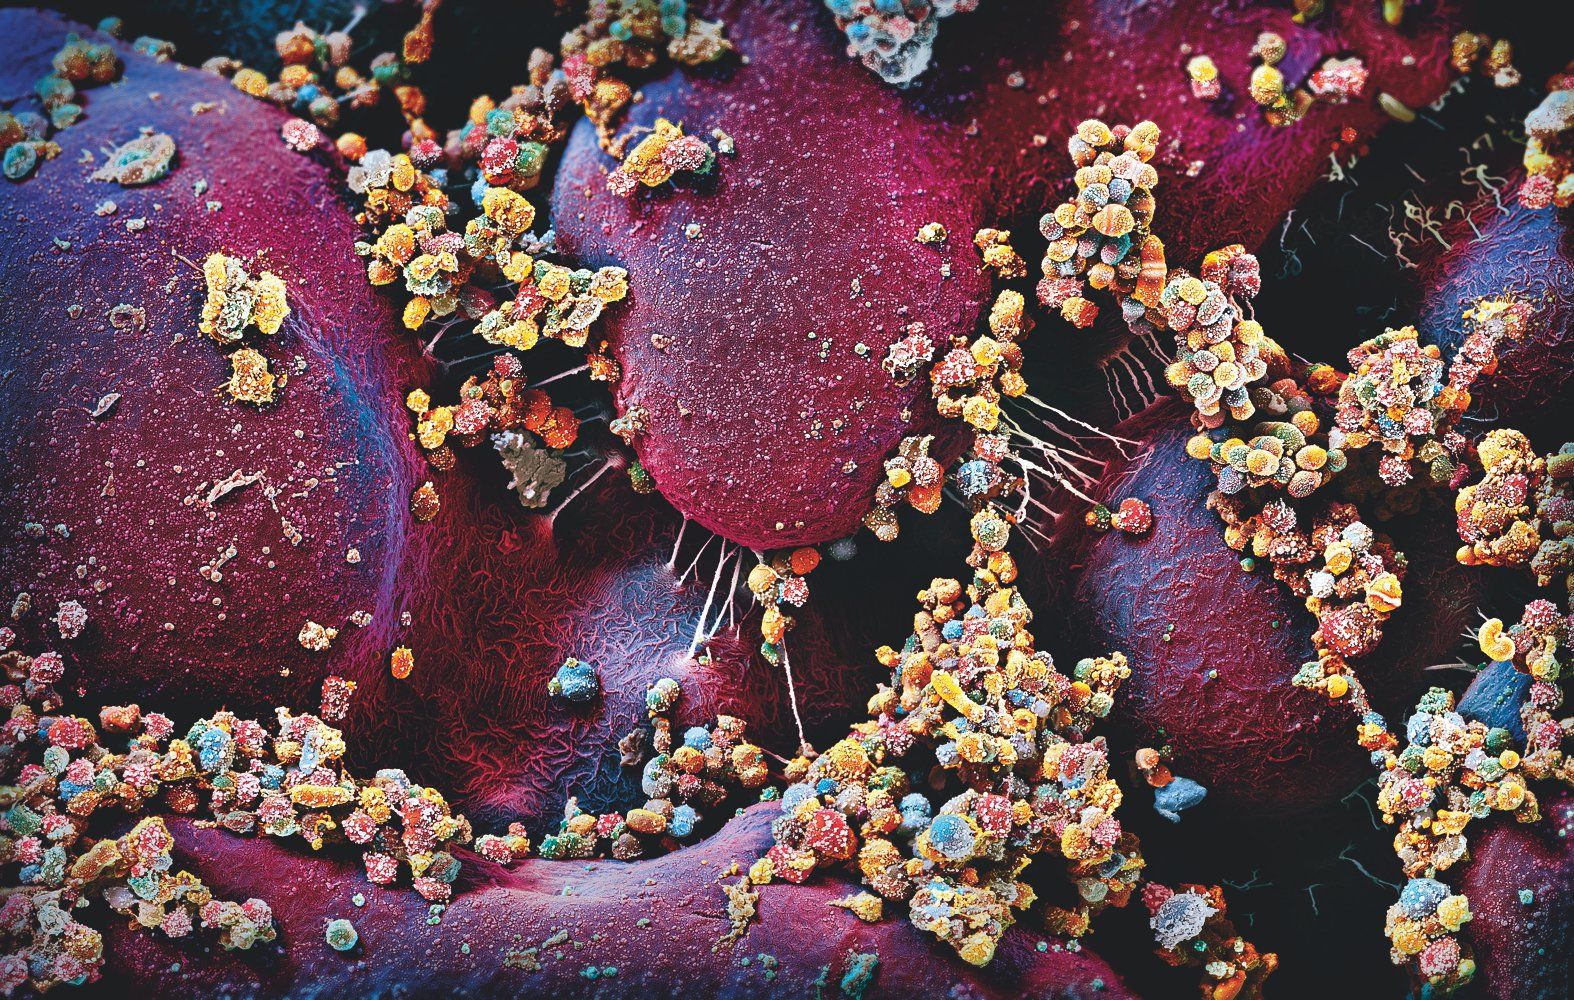 Микробиом человека: как на нас влияет многомиллиардный зоопарк микробов